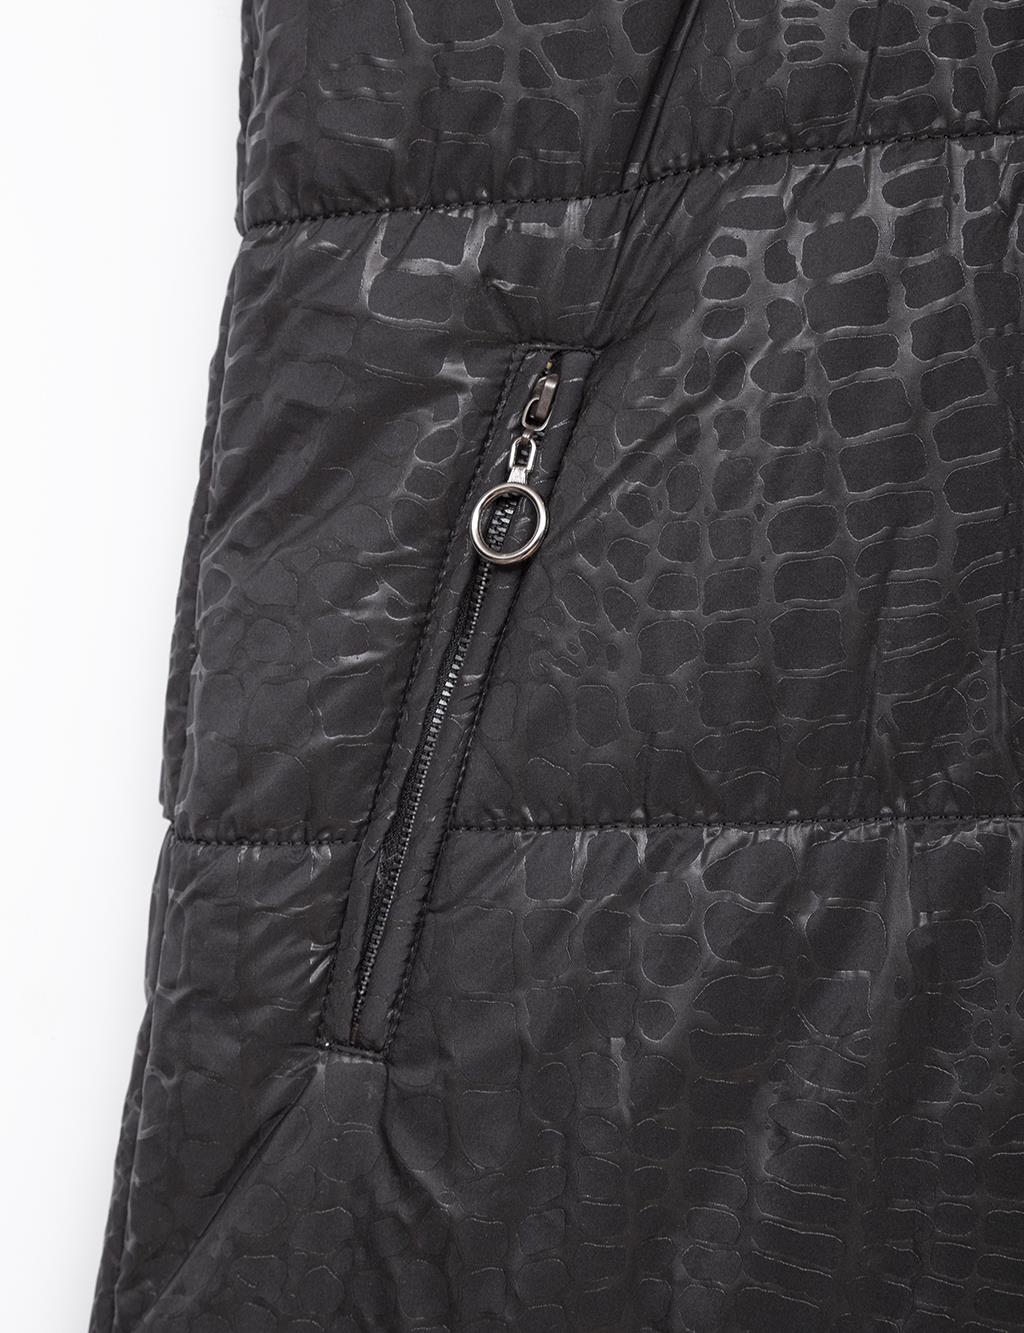 Removable Hooded Leather Patterned Vest Black